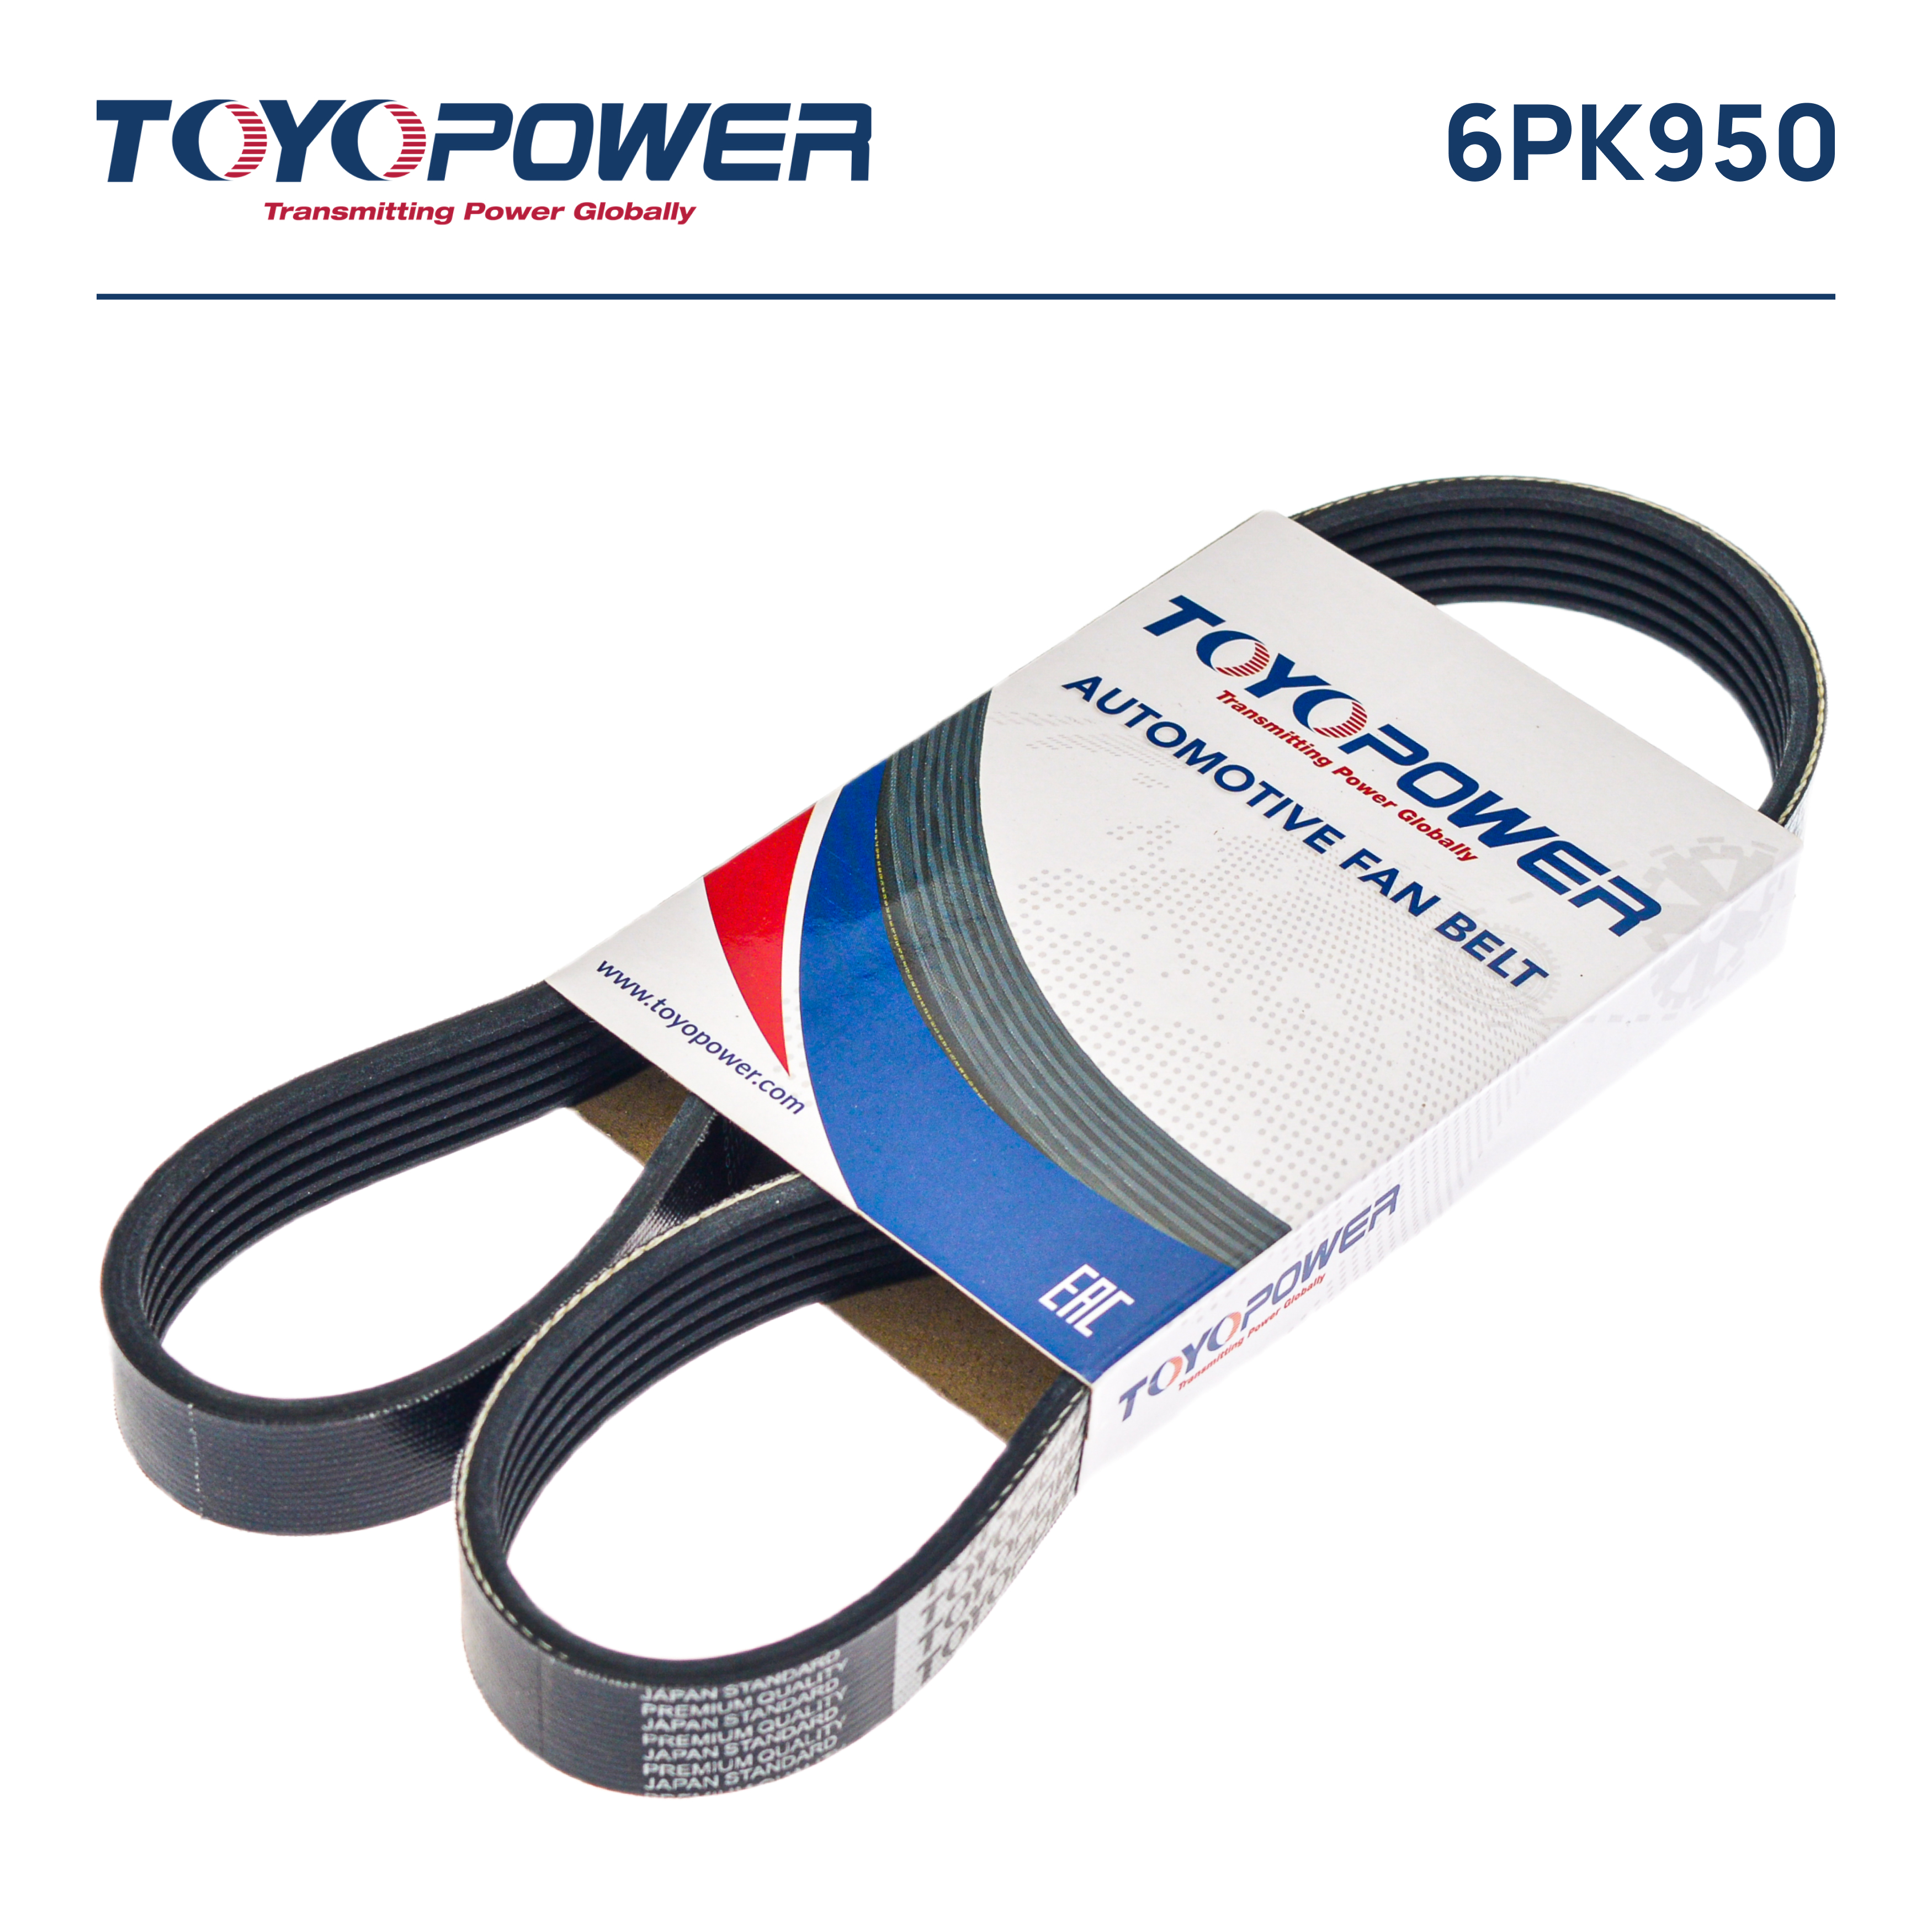 Ремень поликлиновый - Toyopower 6PK950